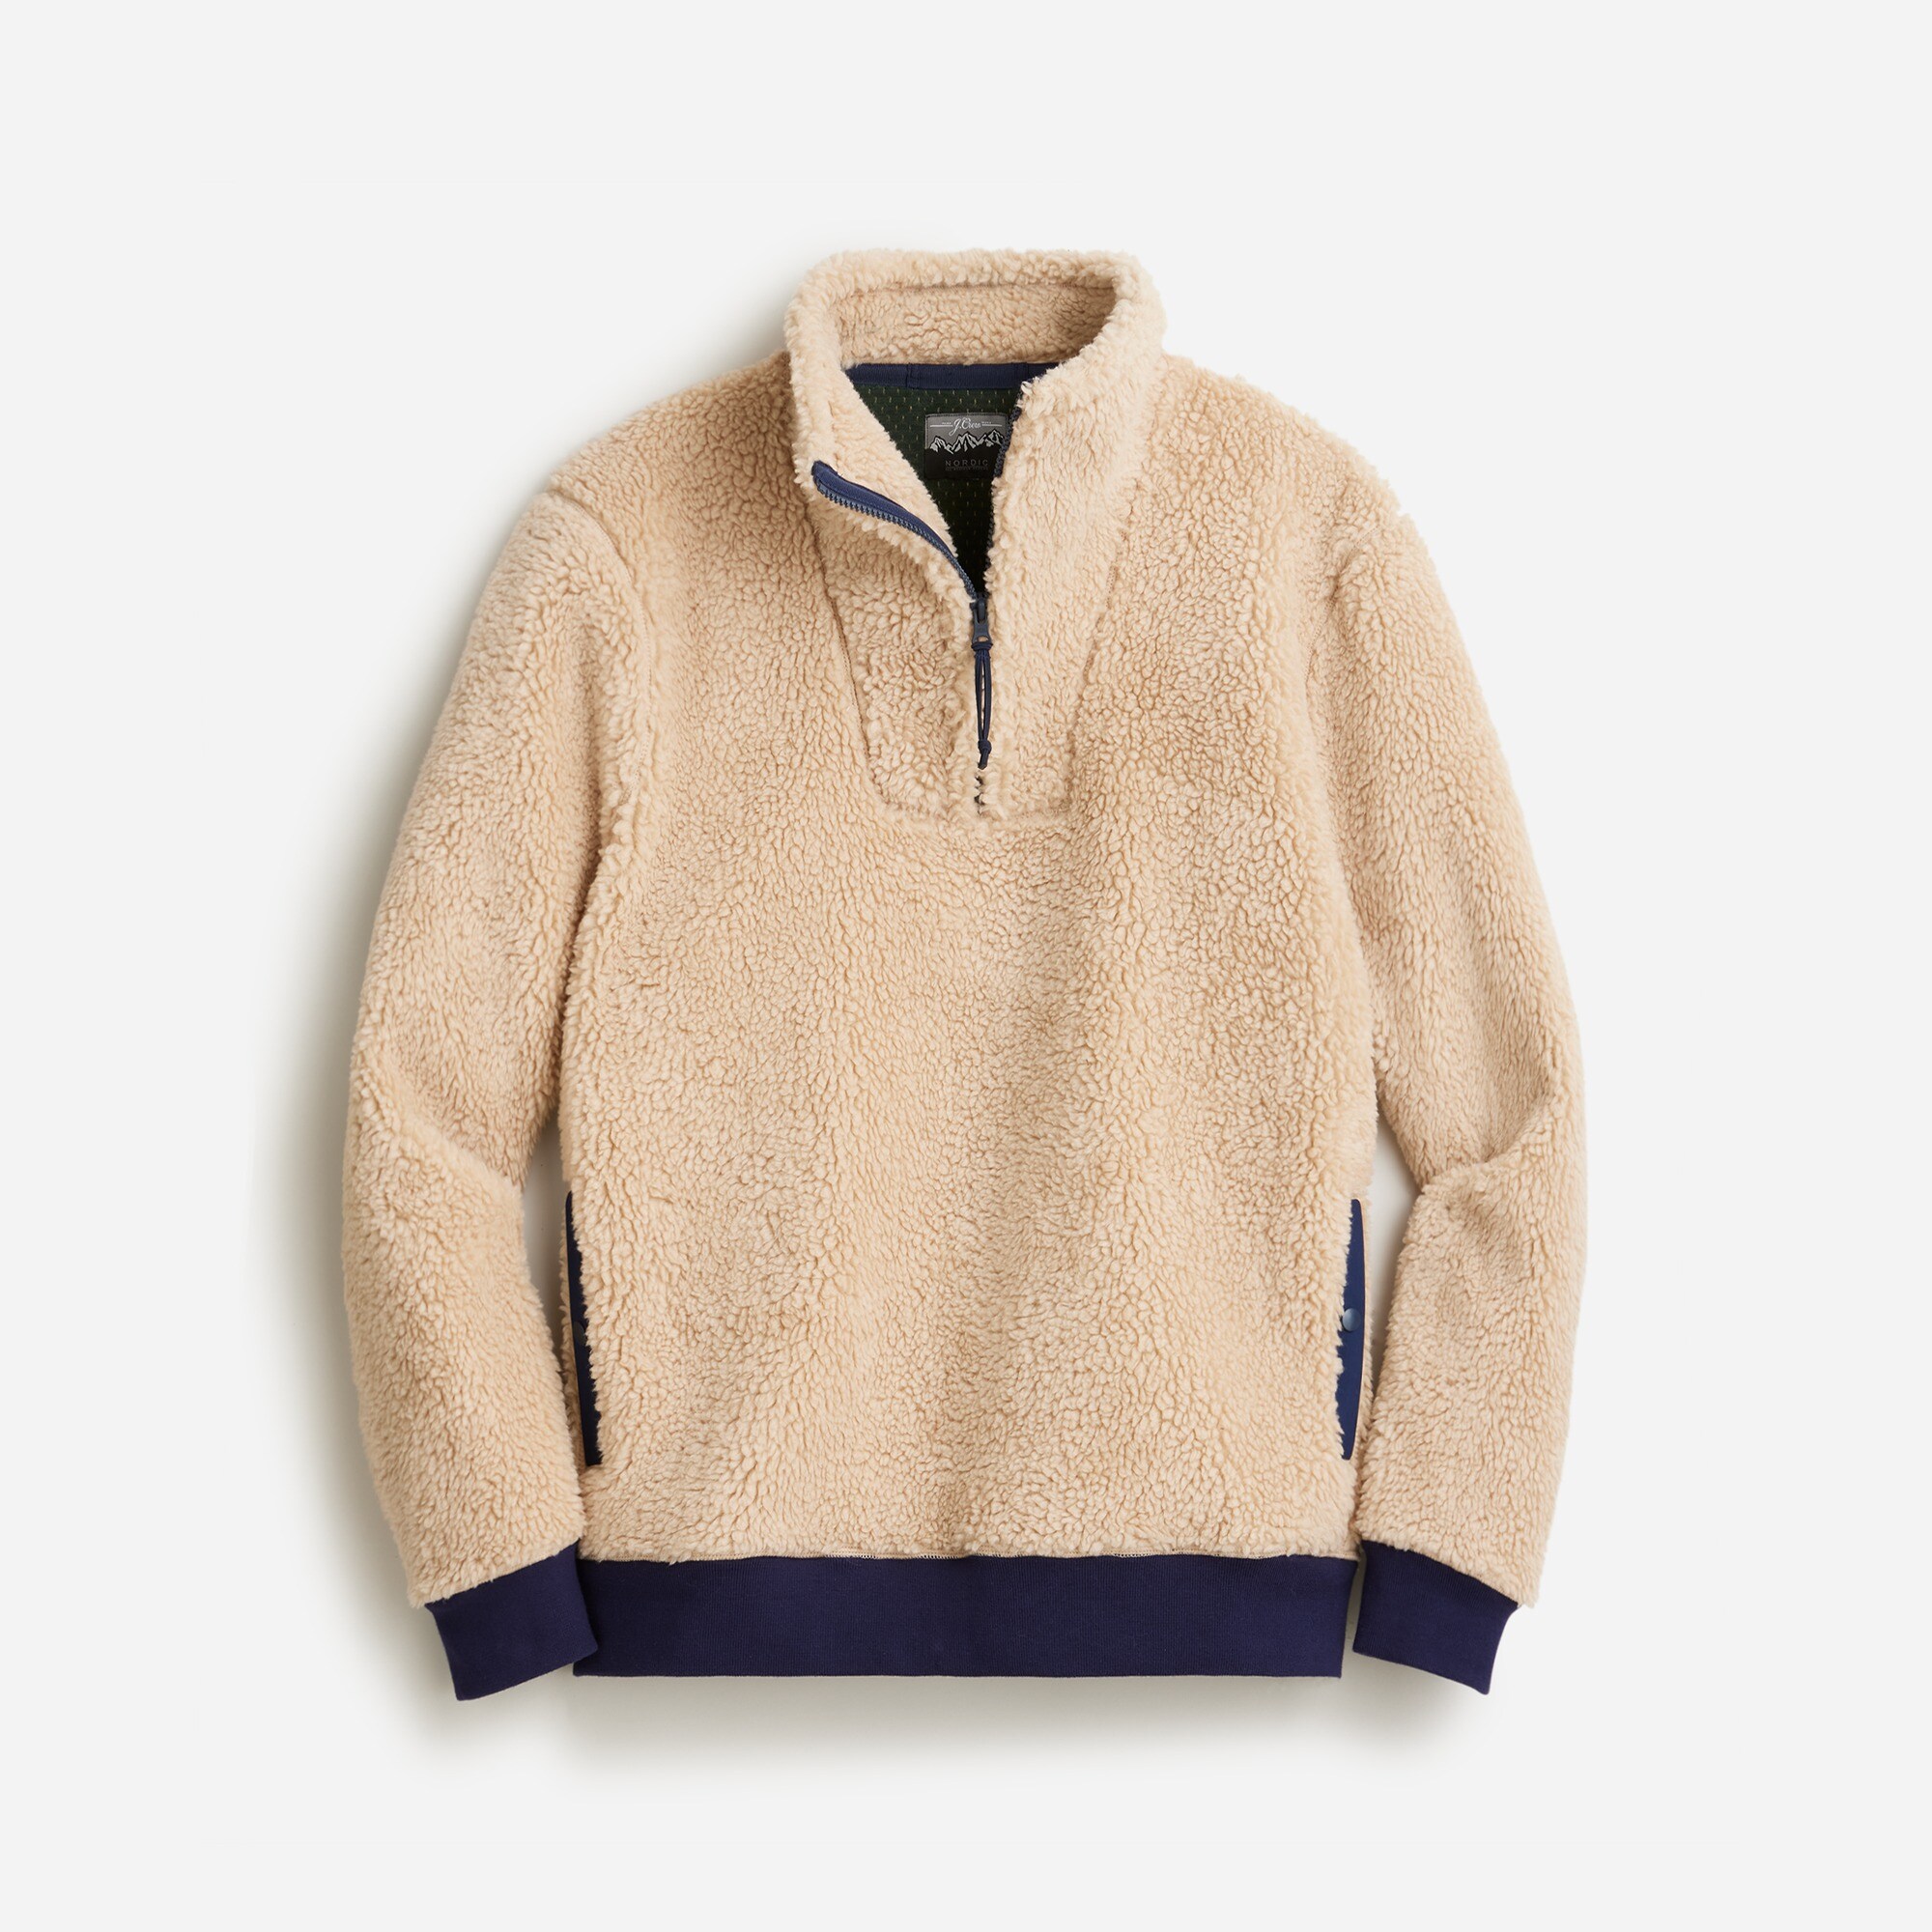  Nordic sherpa fleece half-zip pullover